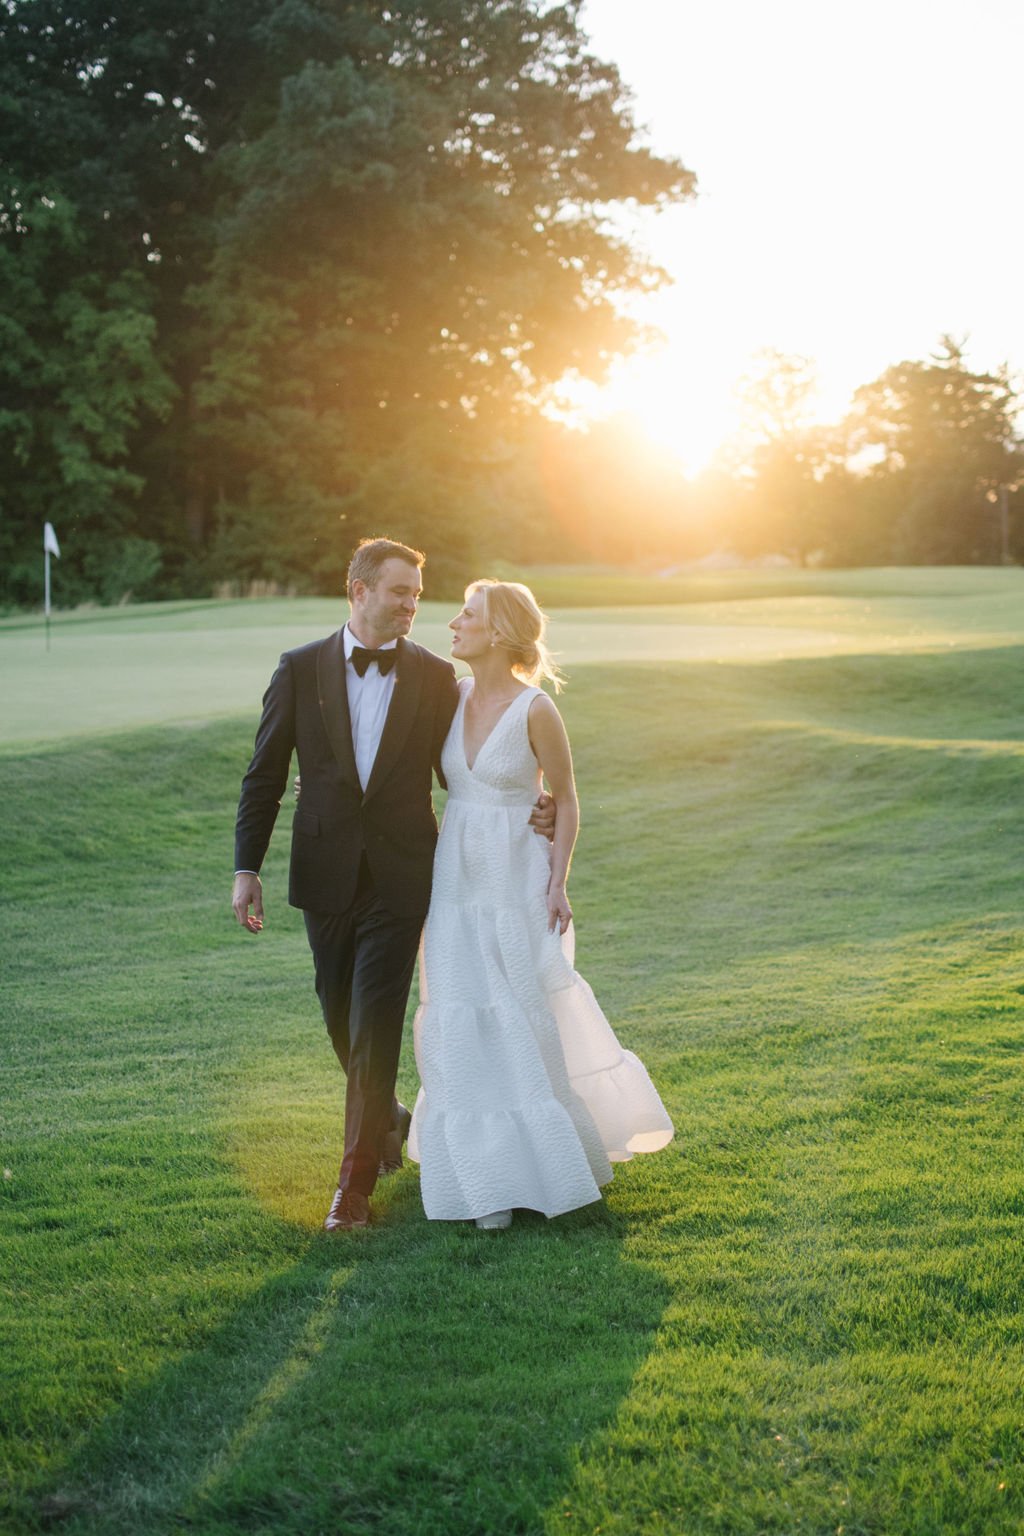 Elegant Toronto Golf Club summer wedding photographed by Toronto wedding photographers, Ugo Photography